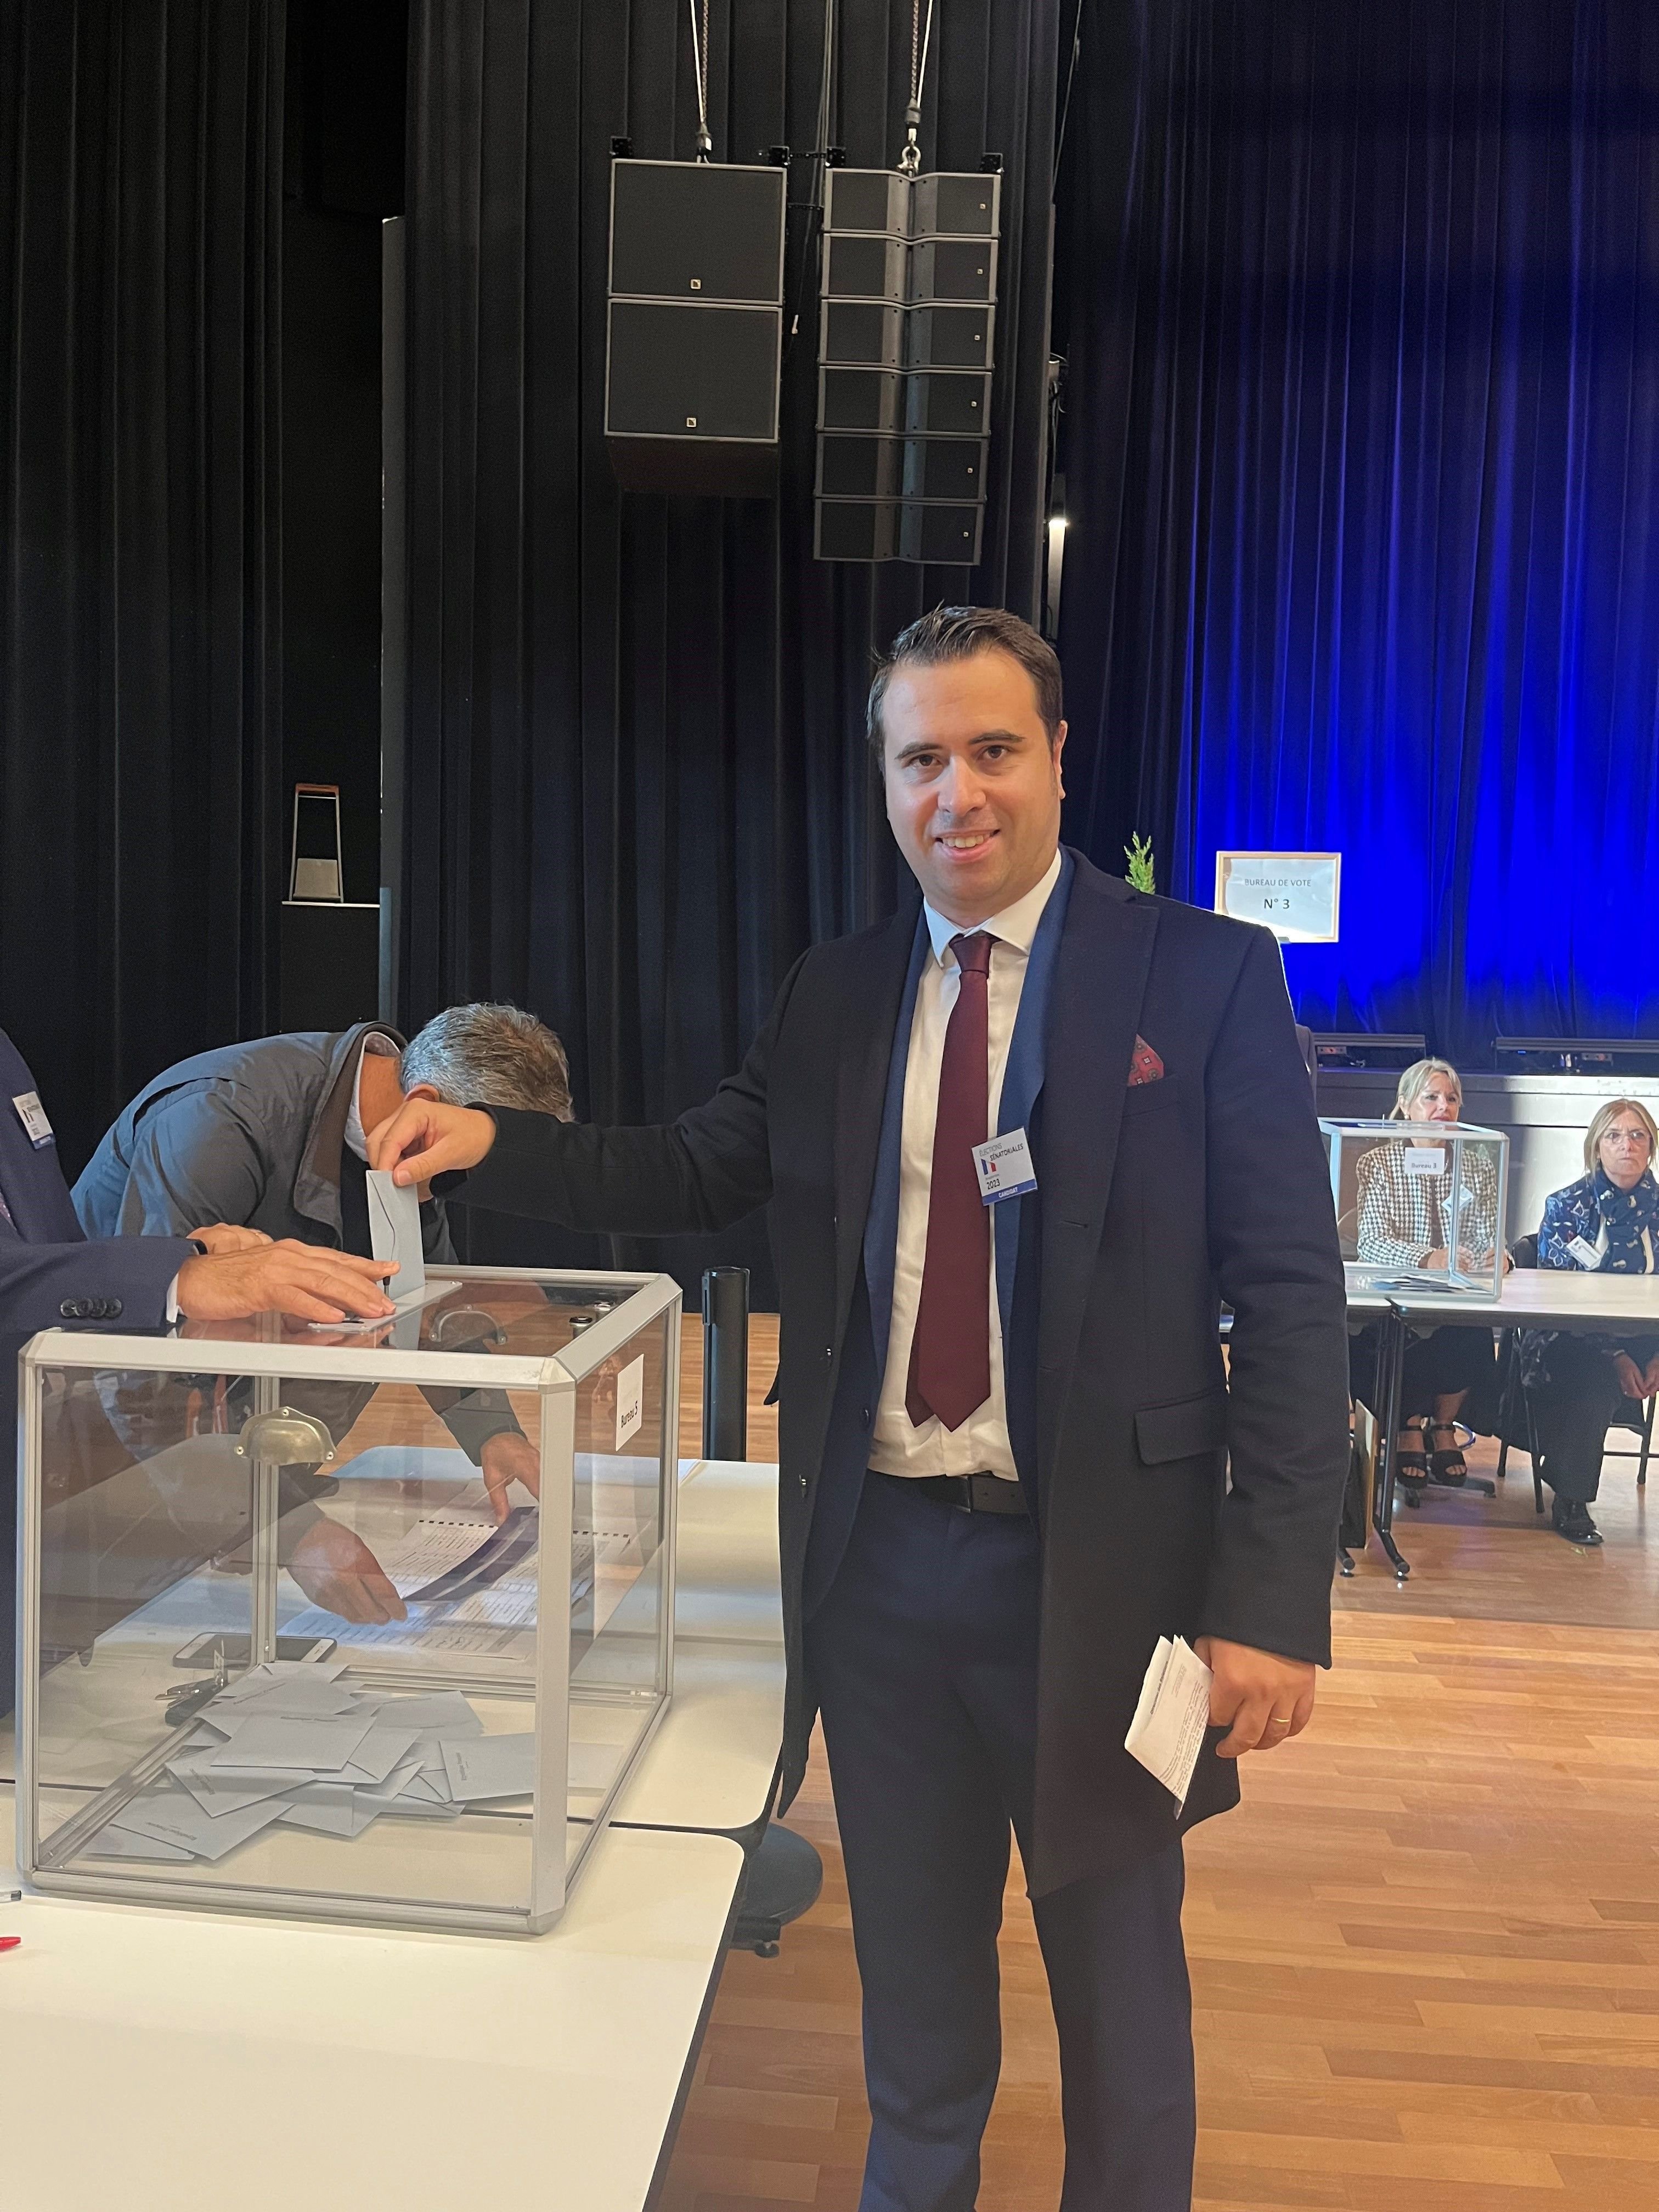 Melun, 24 septembre. Aymeric Durox, le délégué départemental du Rassemblement national en Seine-et-Marne, est la tête de liste de son parti dans le département. Il a été élu avec 12,98% des voix et remporte un siège au Sénat.